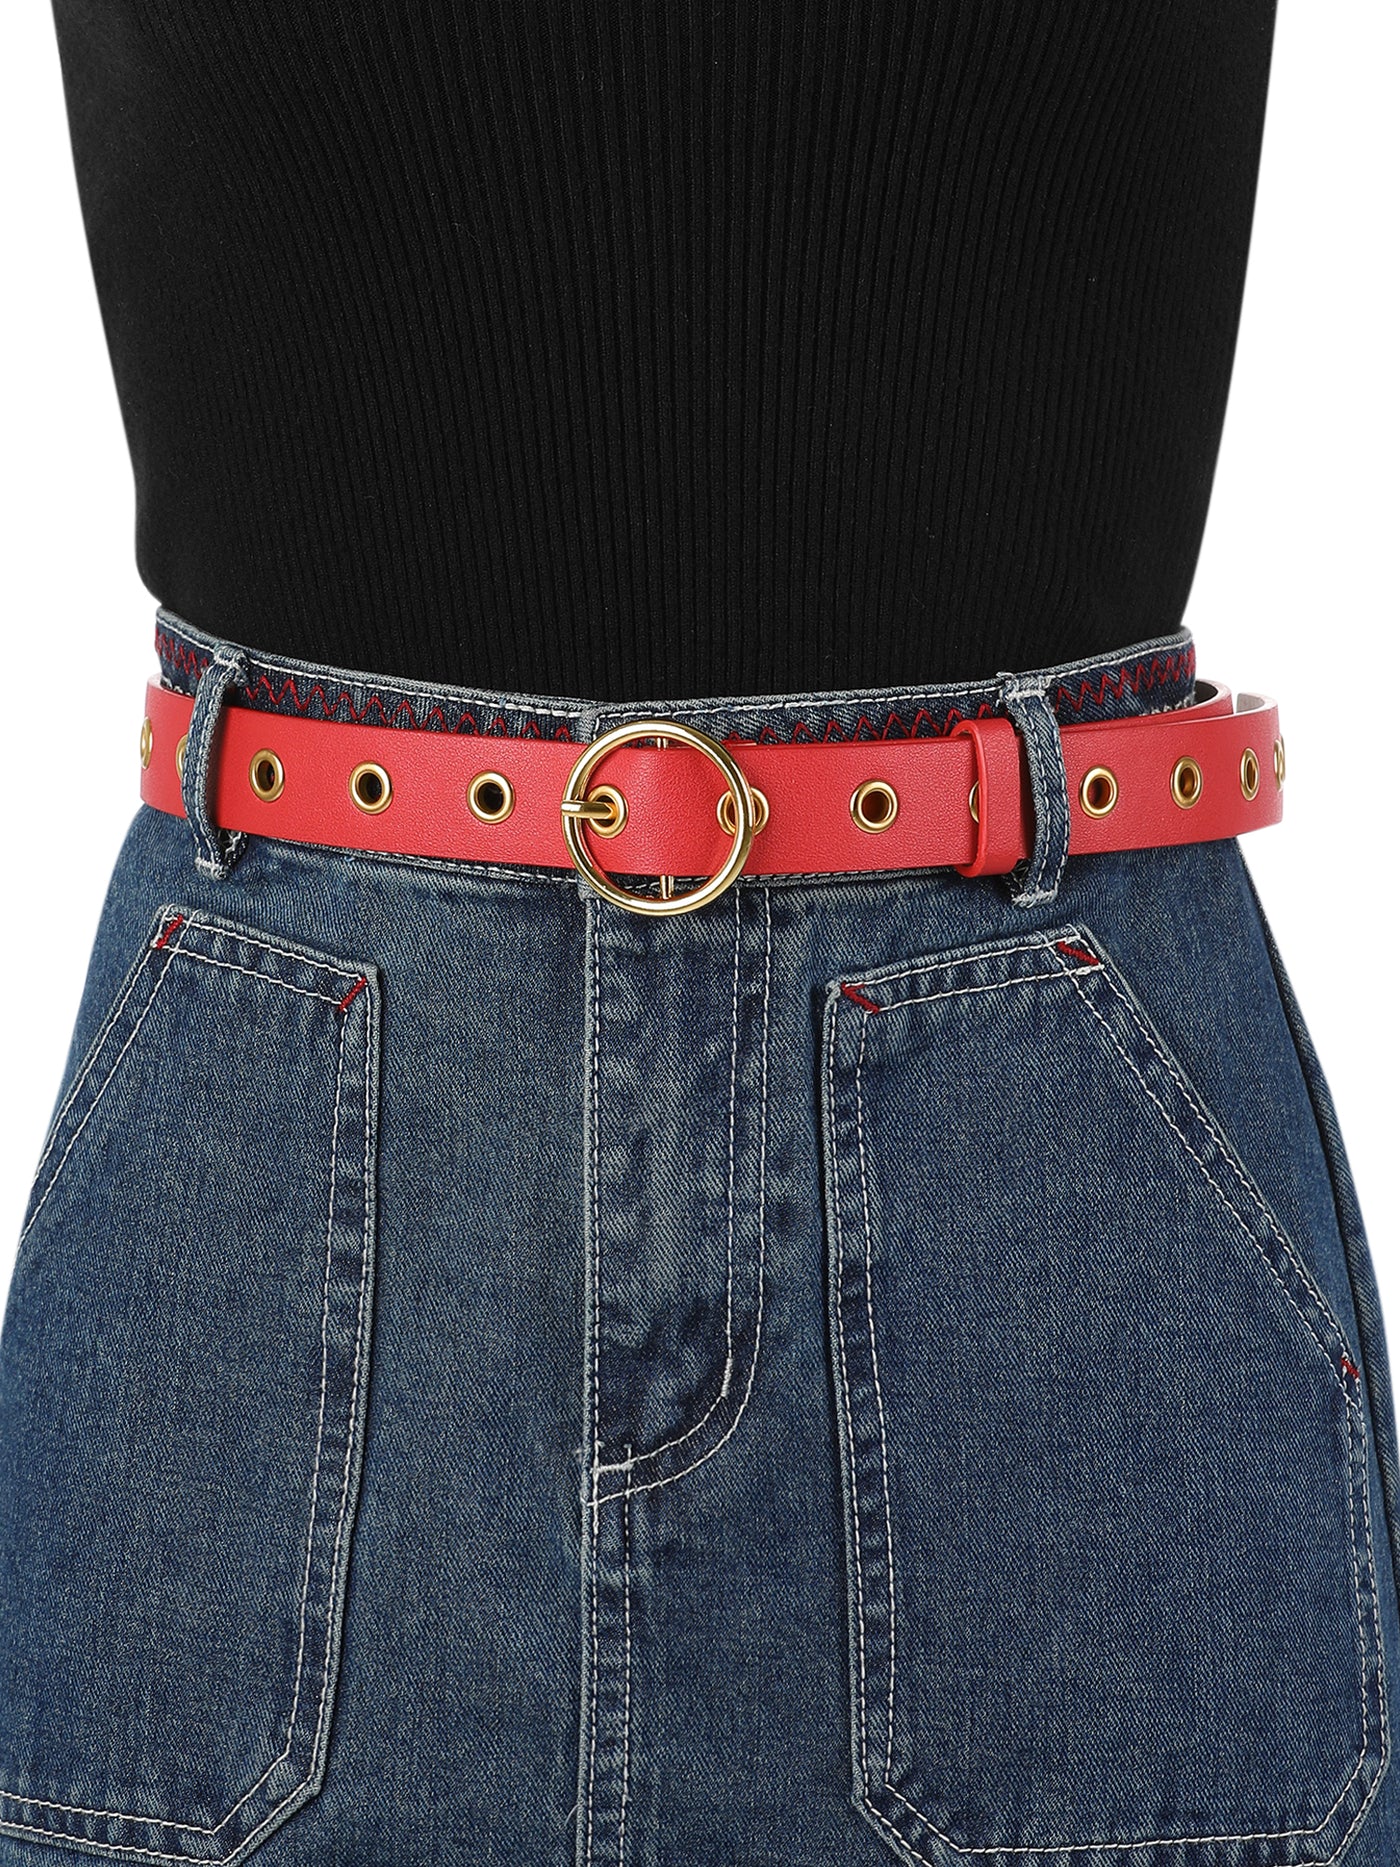 Allegra K Womens Grommet Belt Faux Leather Single Pin Buckle Punk Belts for Jeans Pants